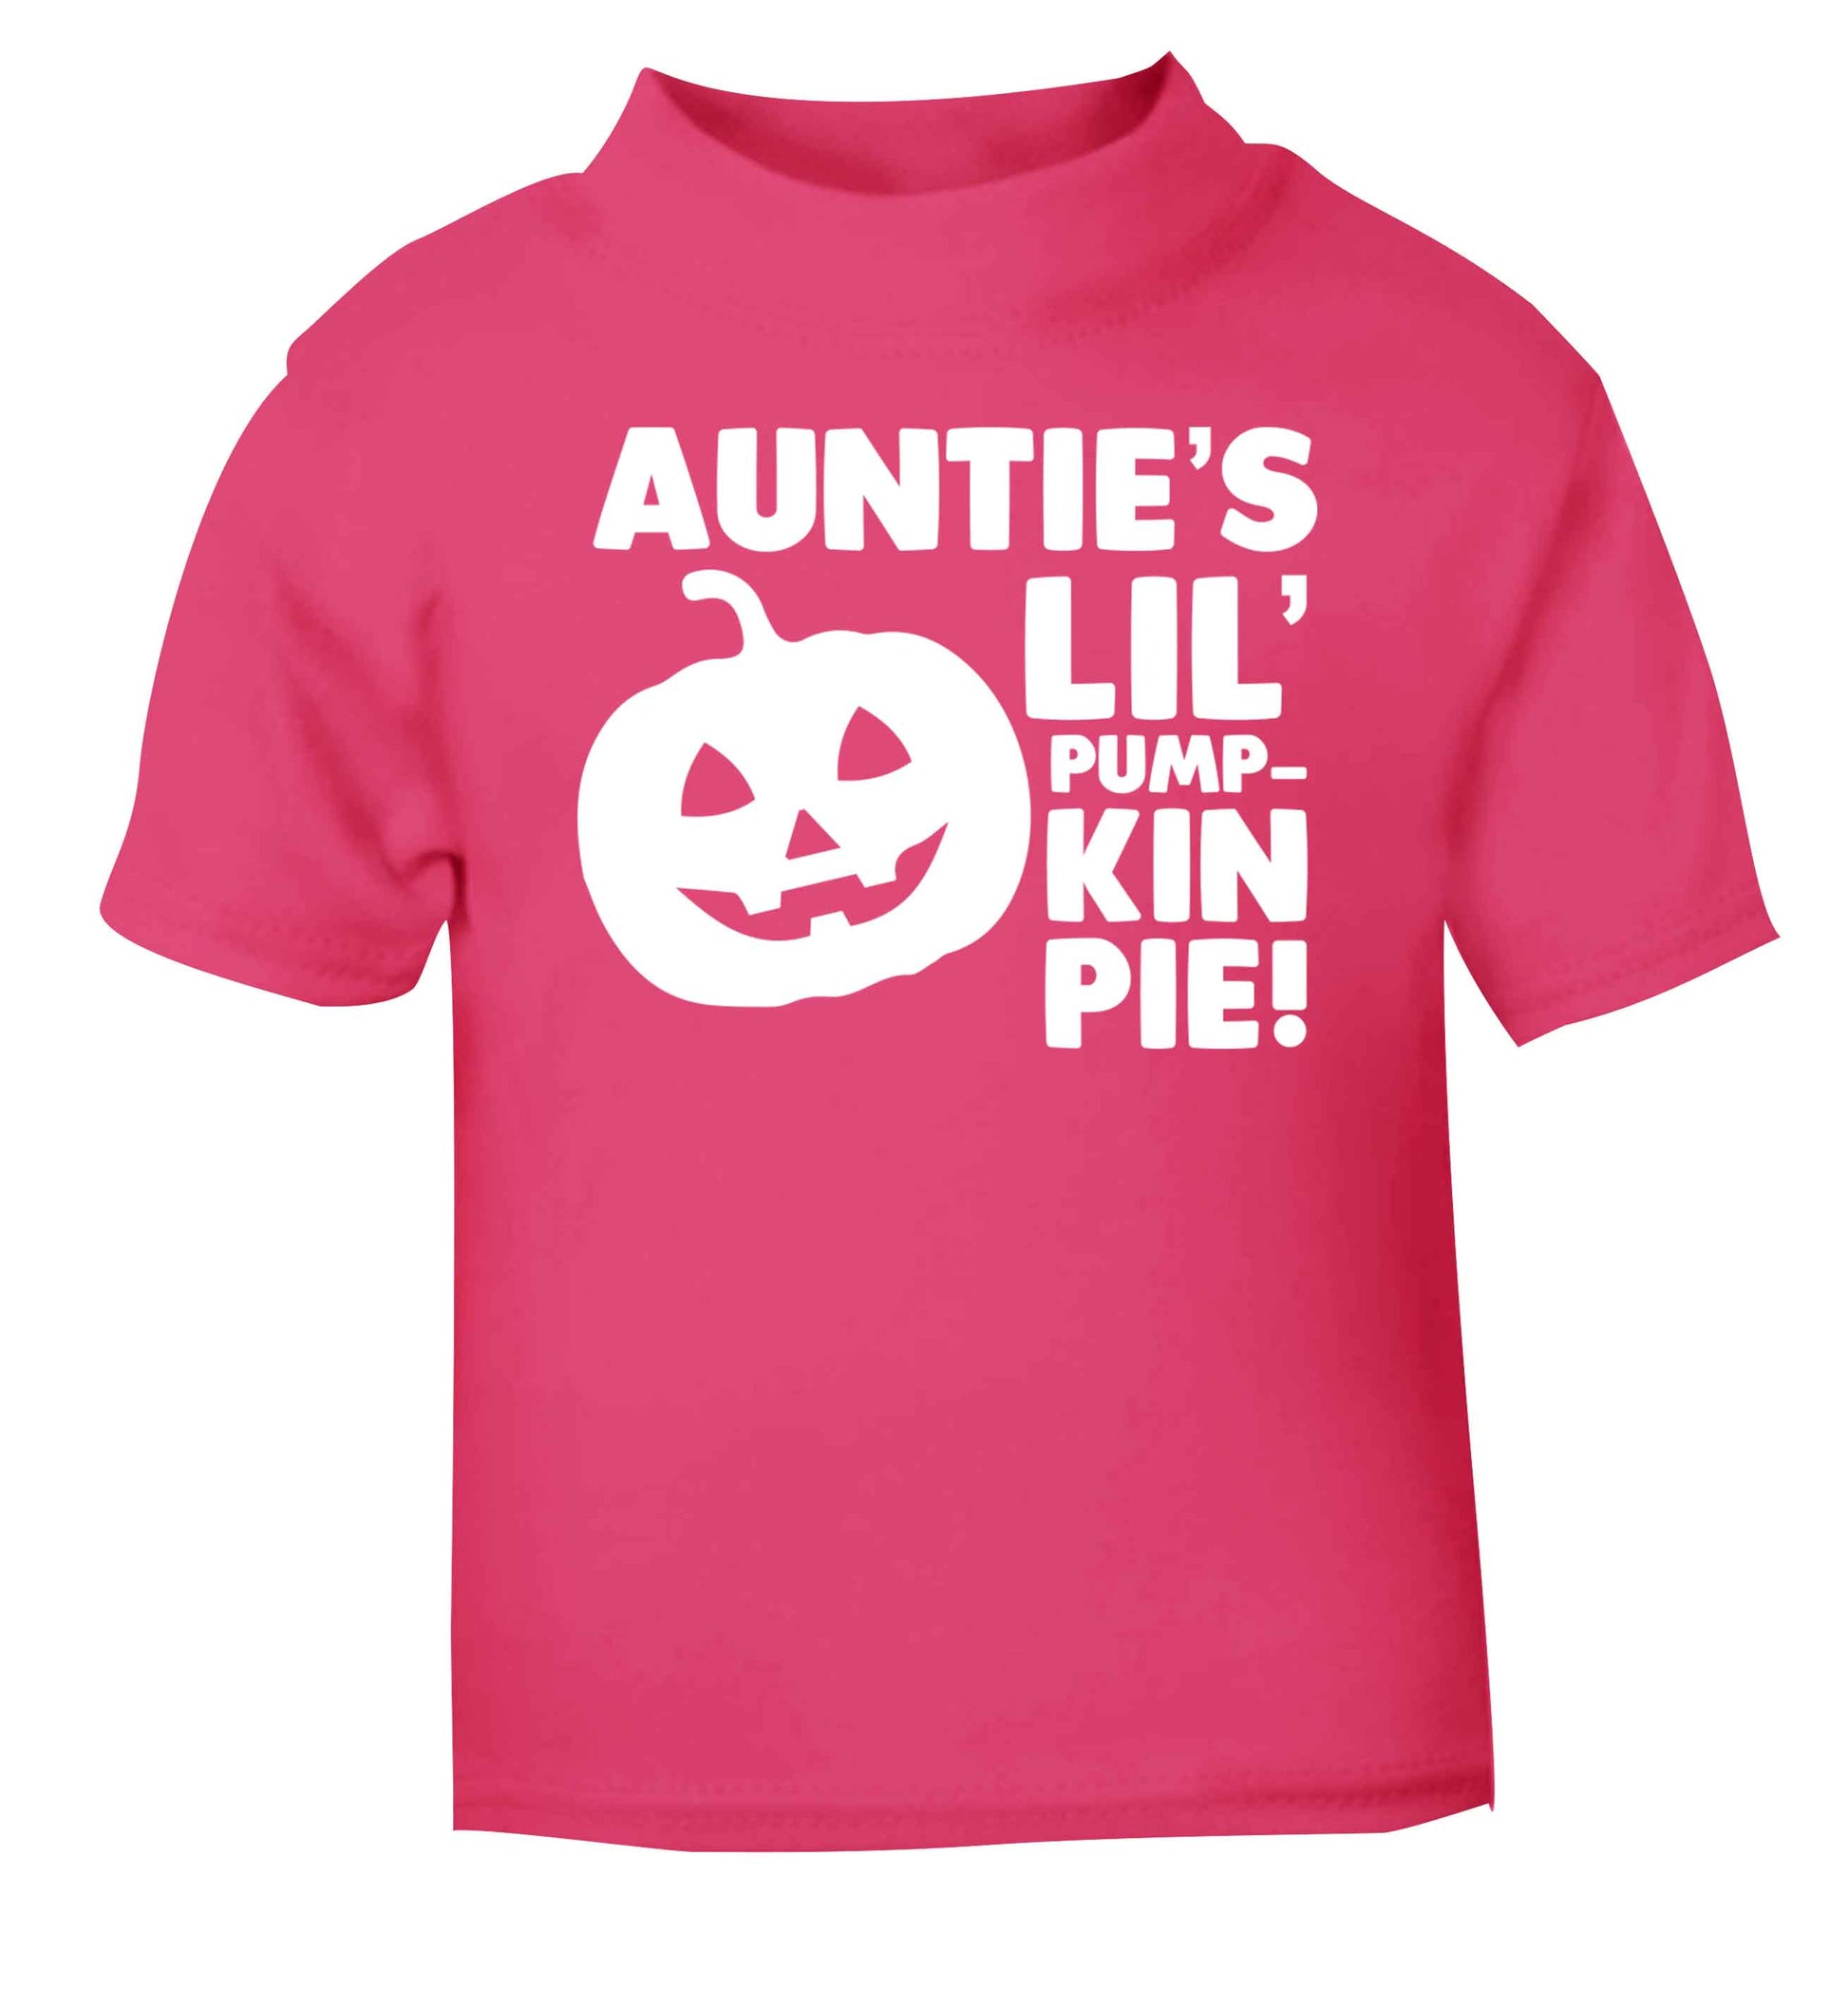 Auntie's lil' pumpkin pie pink baby toddler Tshirt 2 Years